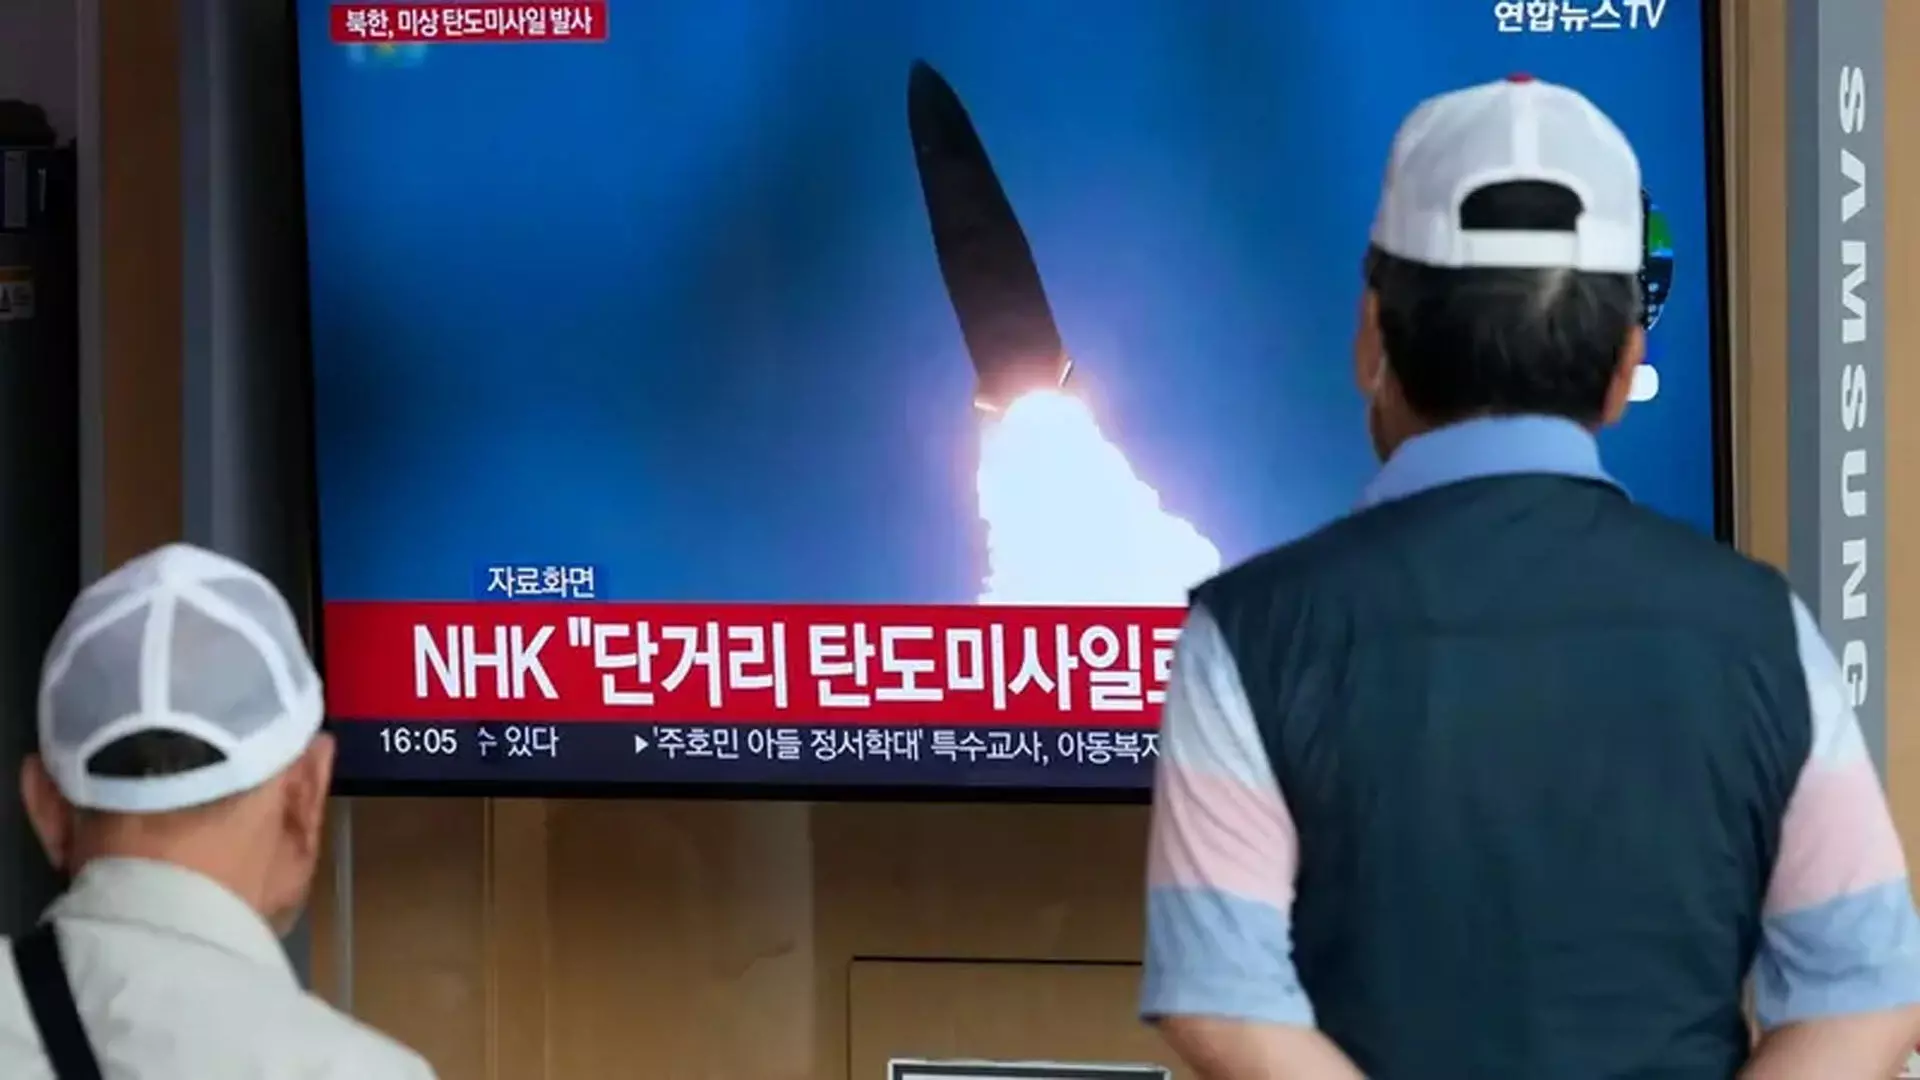 South Korea ने उत्तर कोरिया के मिसाइल परीक्षण की सफलता के दावों पर विवाद करते हुए जारी किया वीडियो